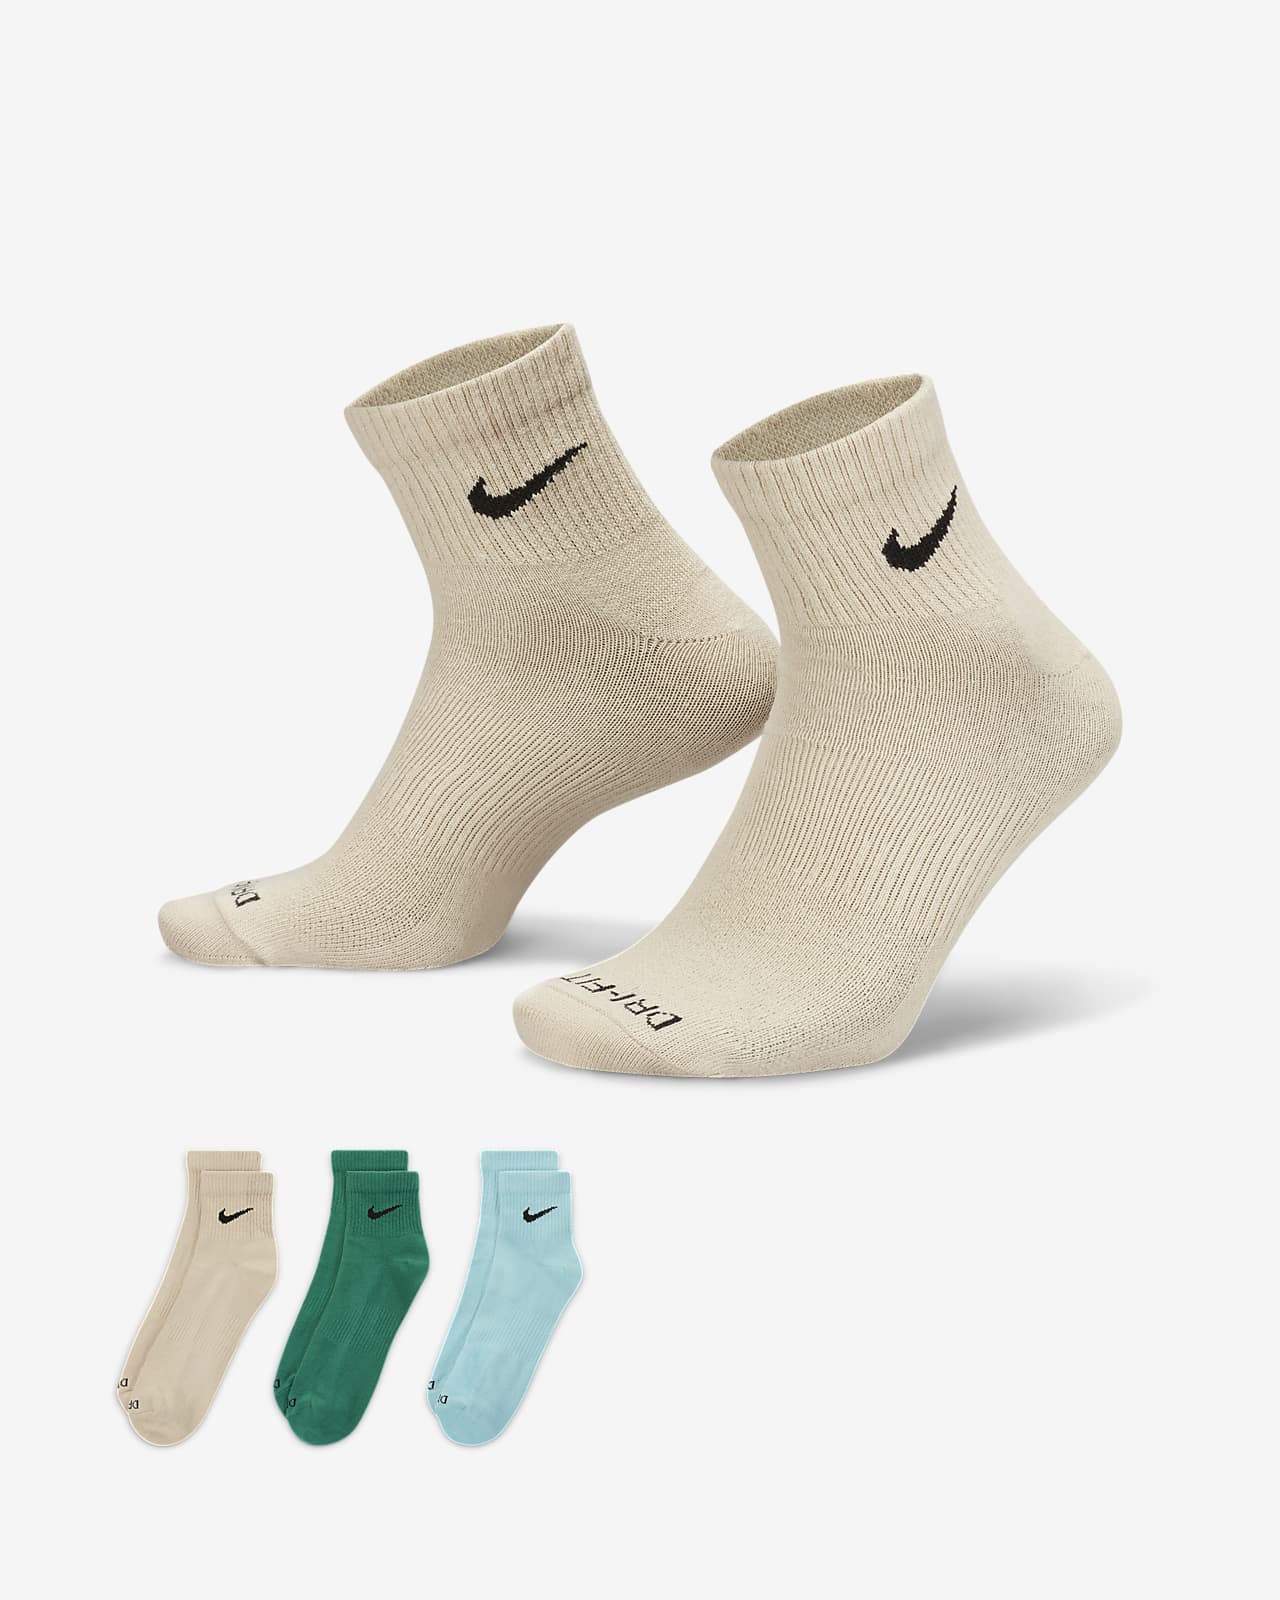 Nike Everyday Plus Lightweight Antrenman Bilek Çorapları (3 Çift)